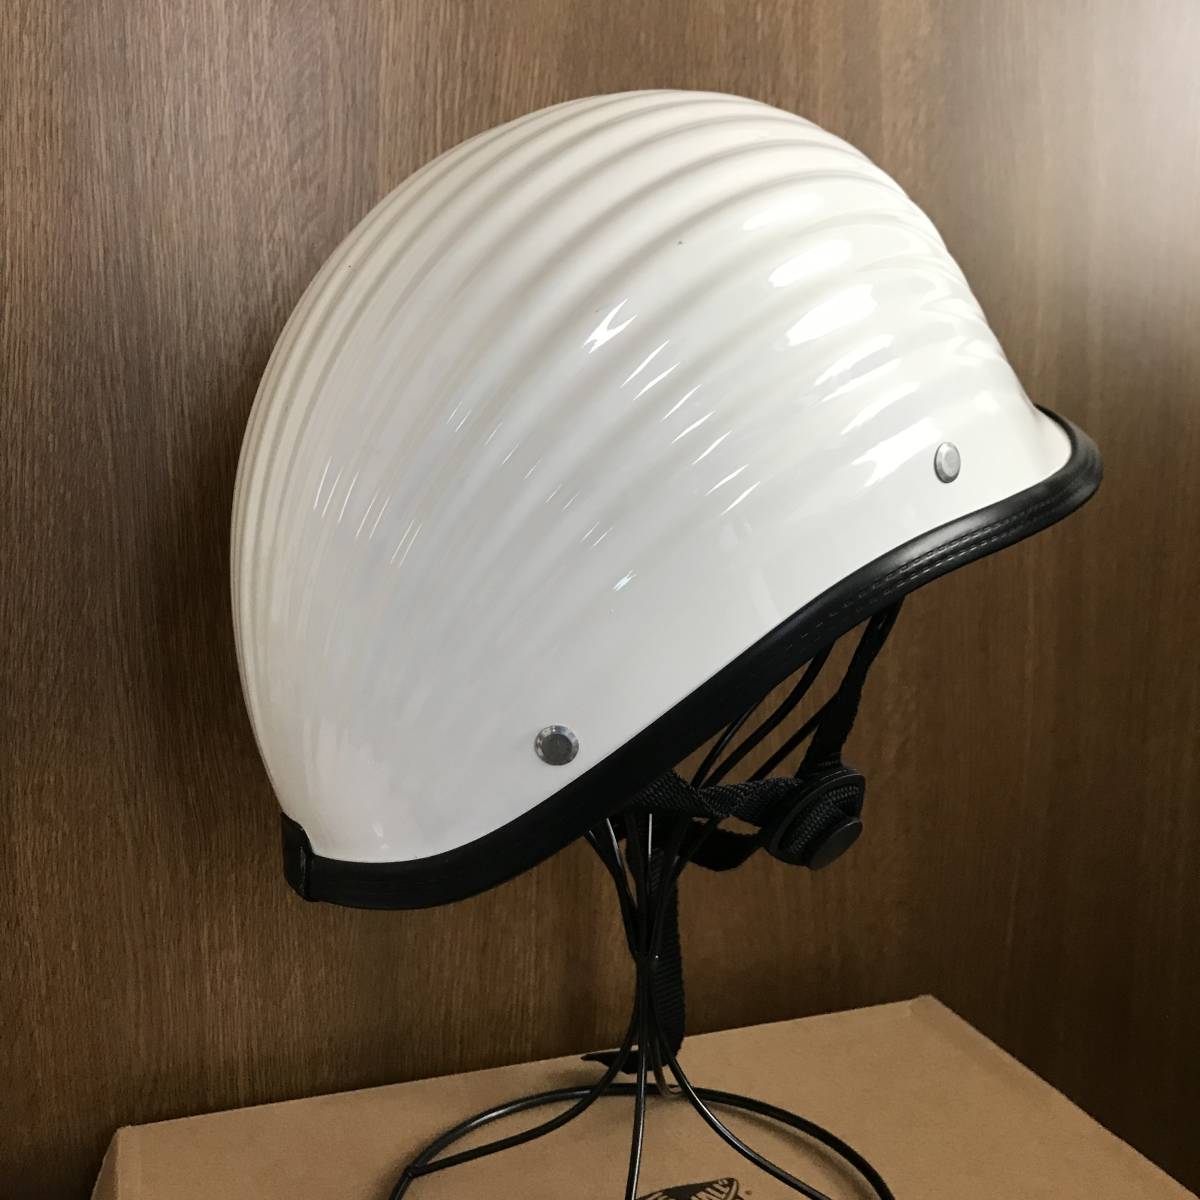 TT &CO リブリブジョッキーハーフヘルメット Lサイズ - セキュリティ